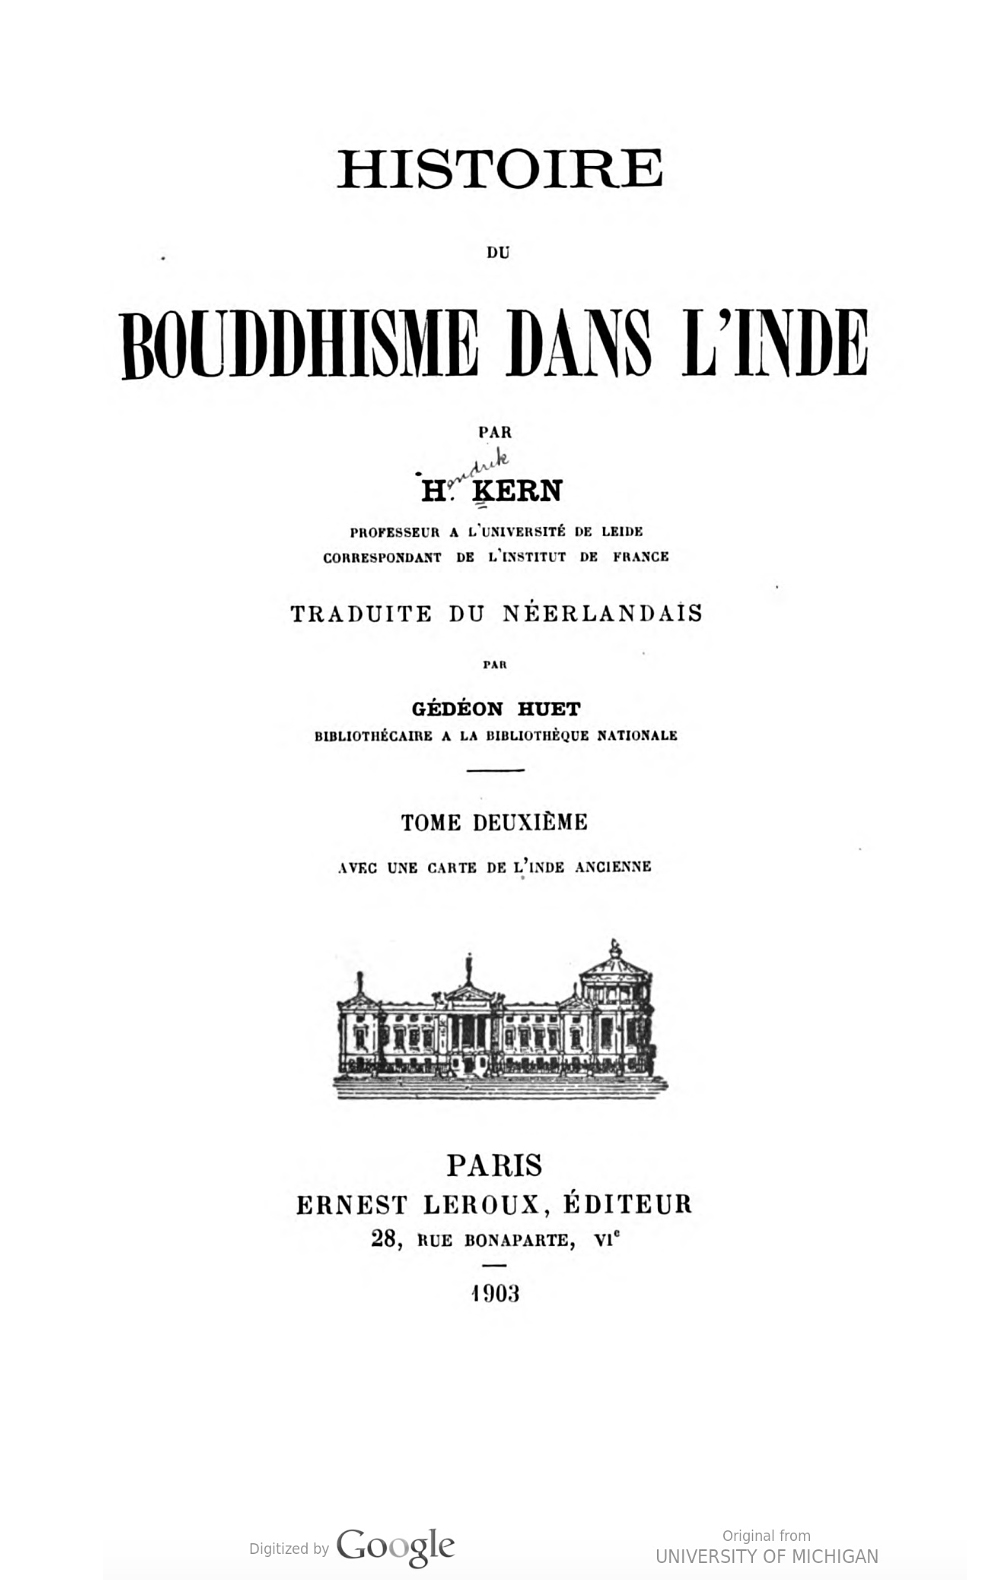 Histoire du Bouddhisme dans lInde Vol 2-front.jpg